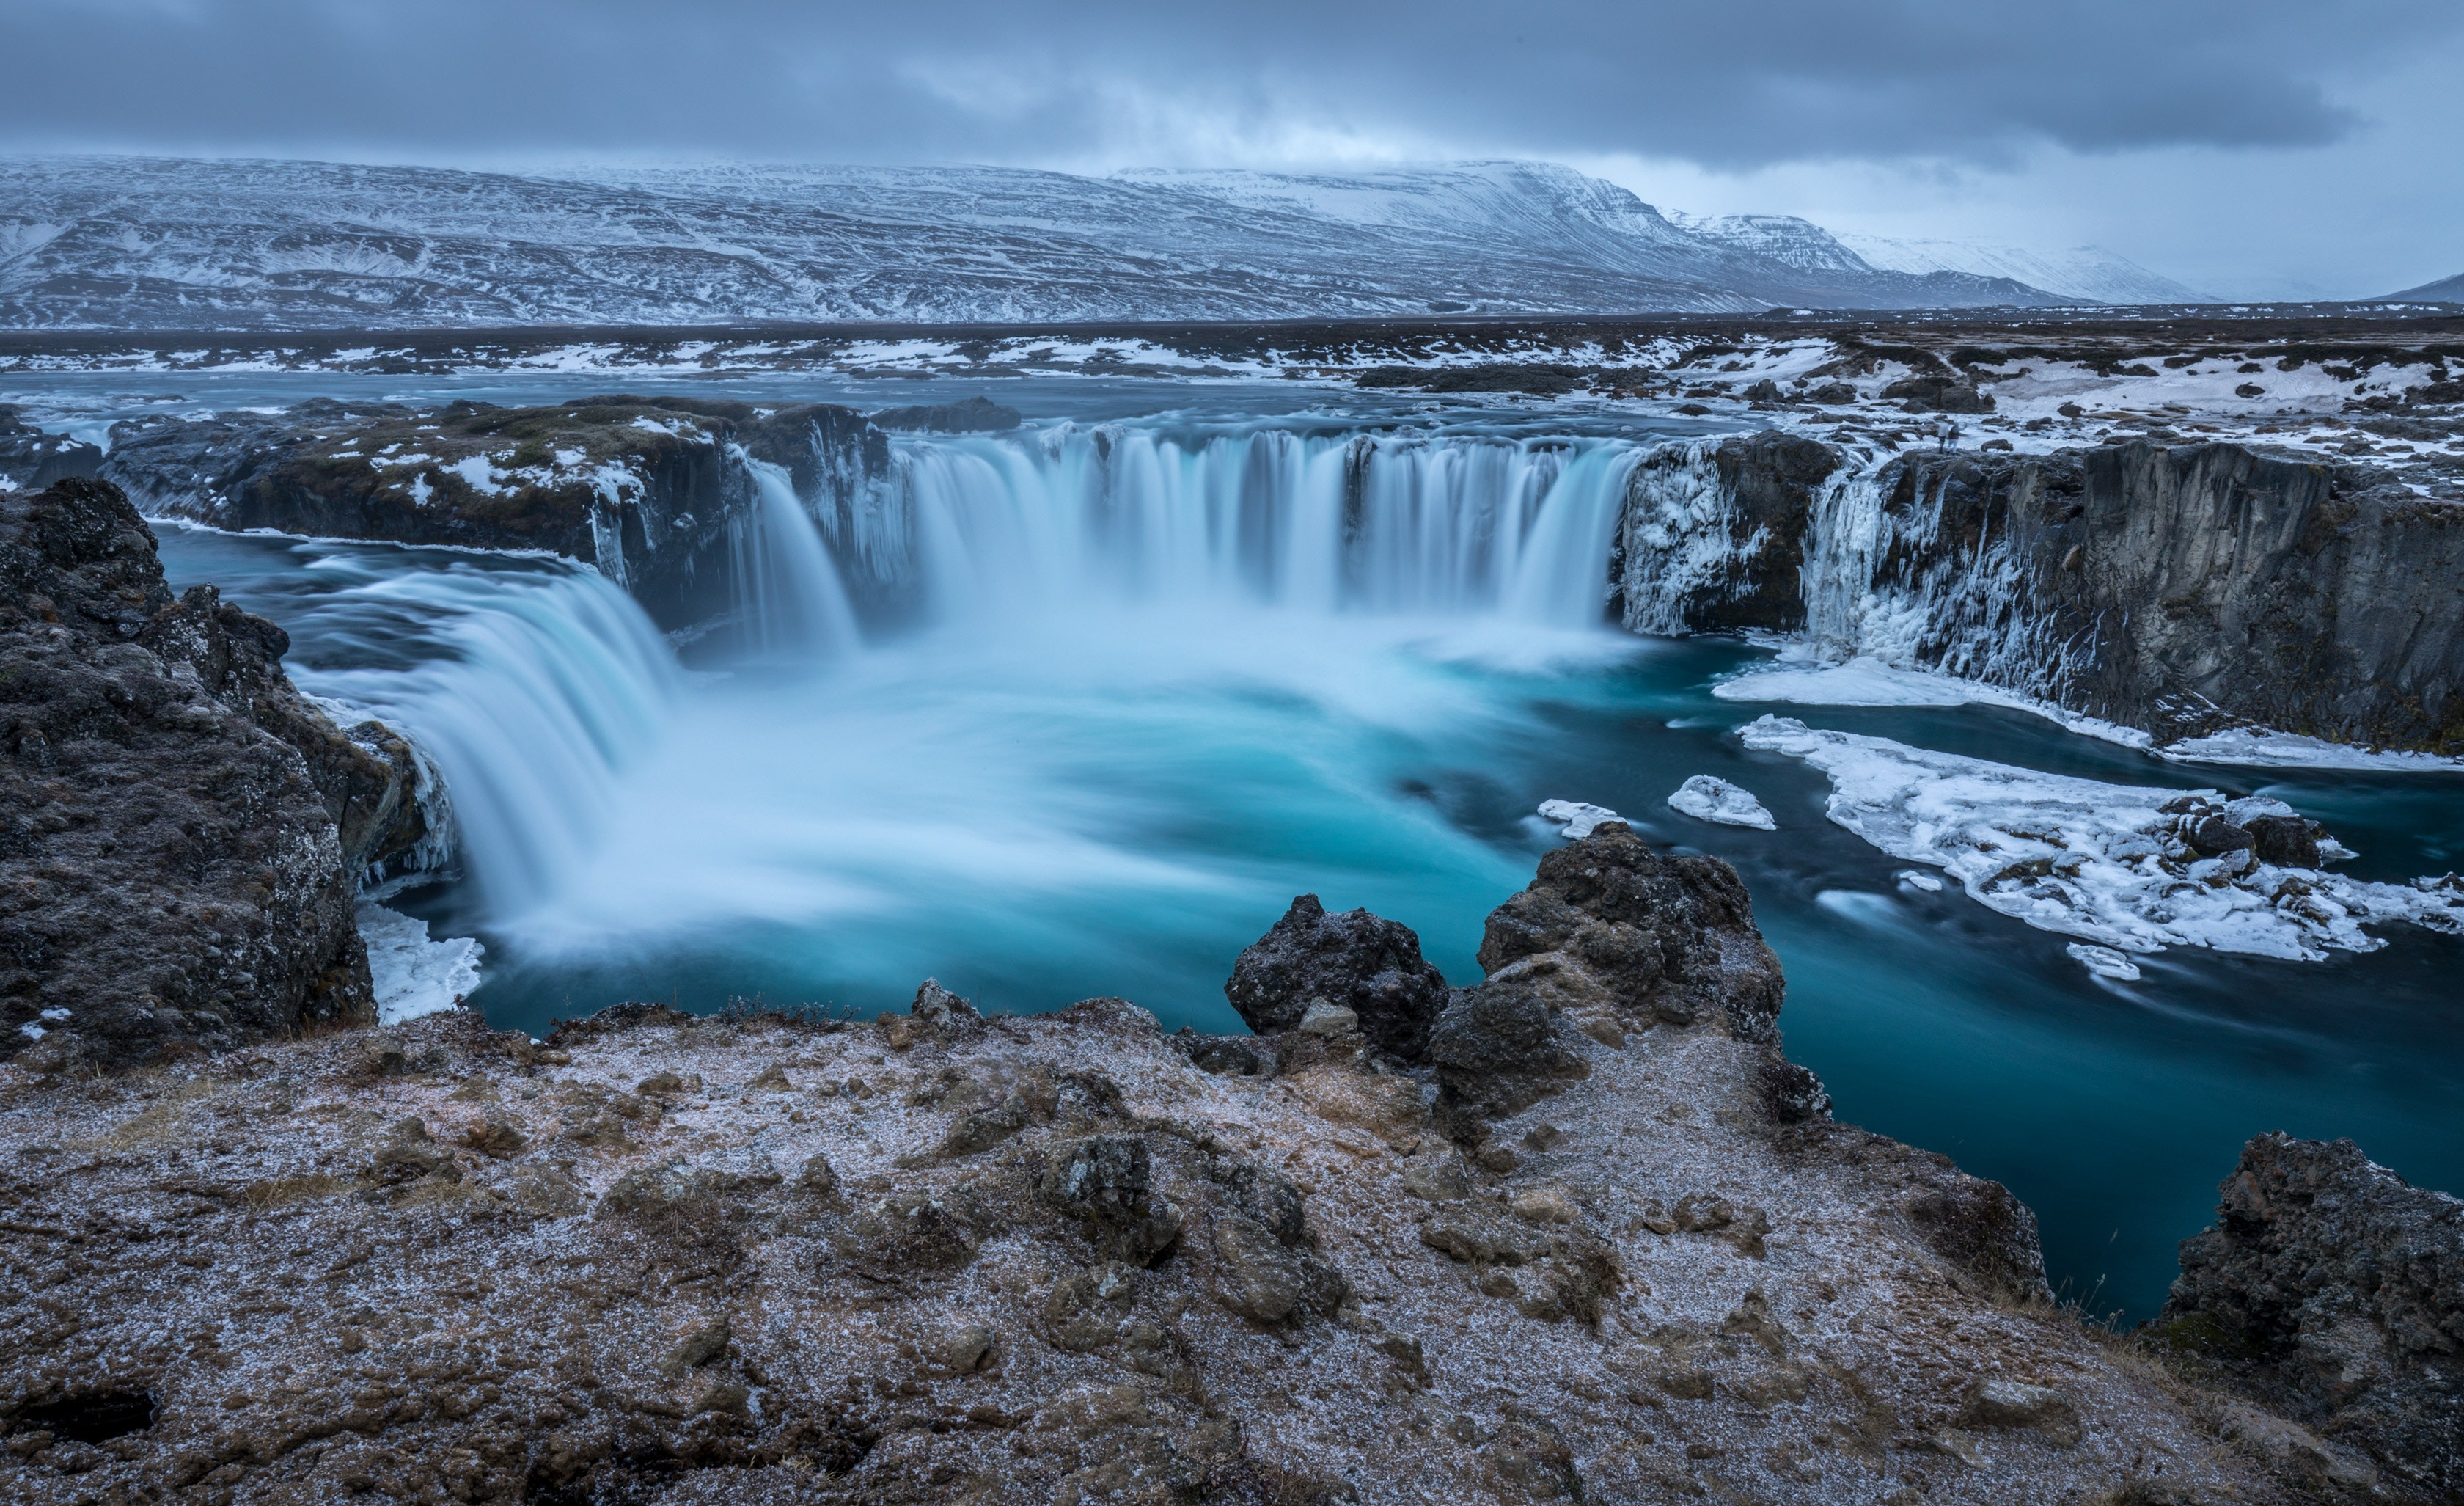 pexels pixabay 327394 - Tag til Island for at se vandfald